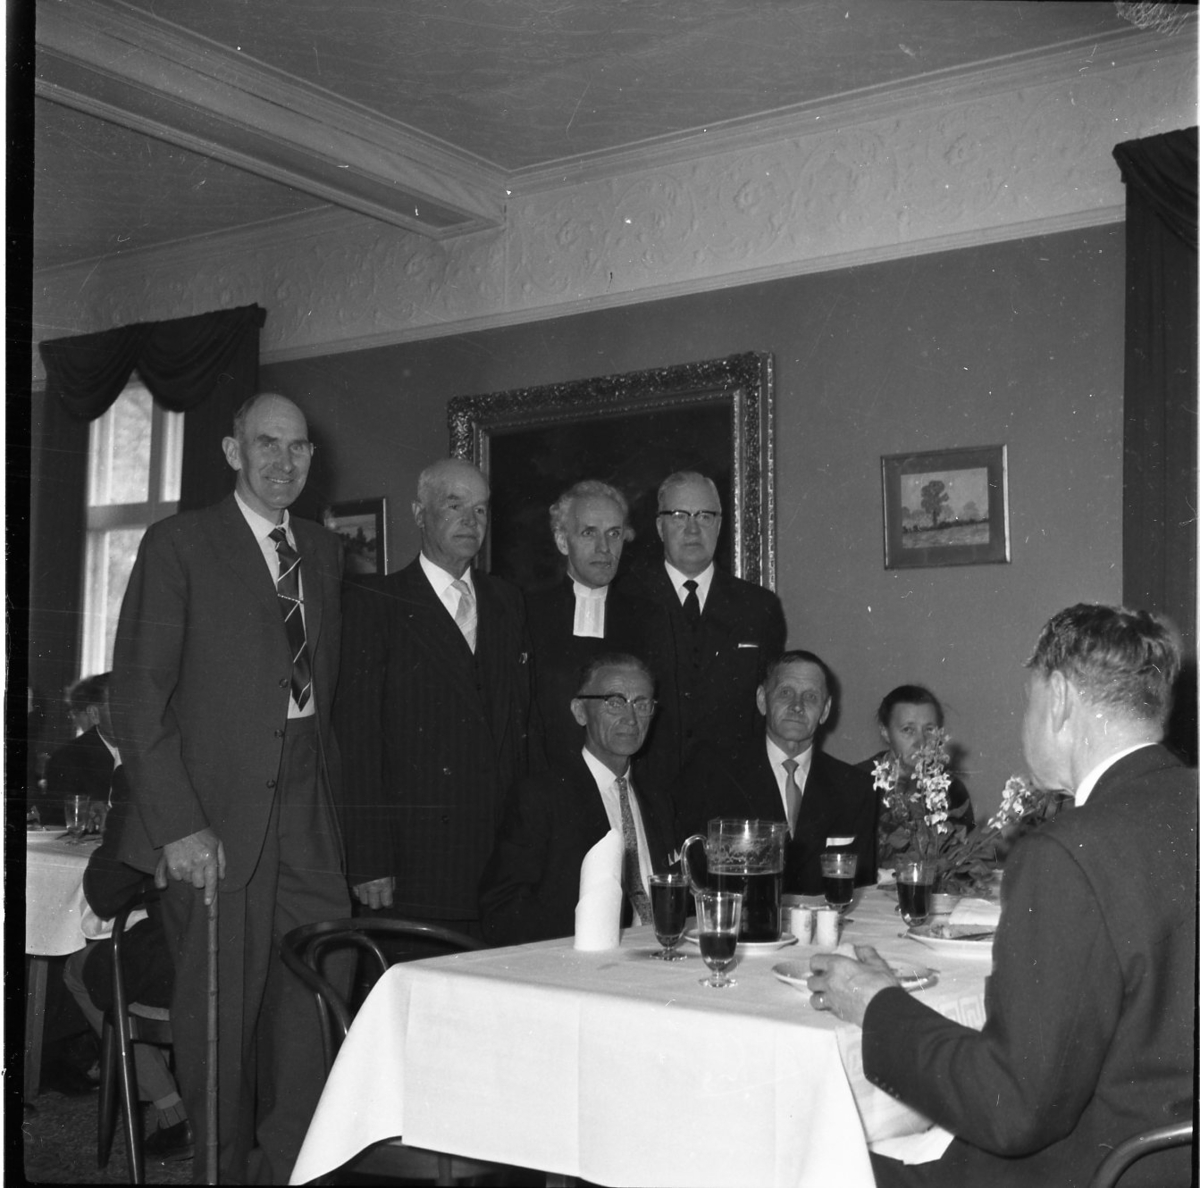 Konfirmandträff i St Hultrum. Fyra män står bakom ett dukat bord där andra män sitter och äter. Prästen som står som trea från vänster är Tore Lord. Någon av de andra är sannolikt Axel Wier.